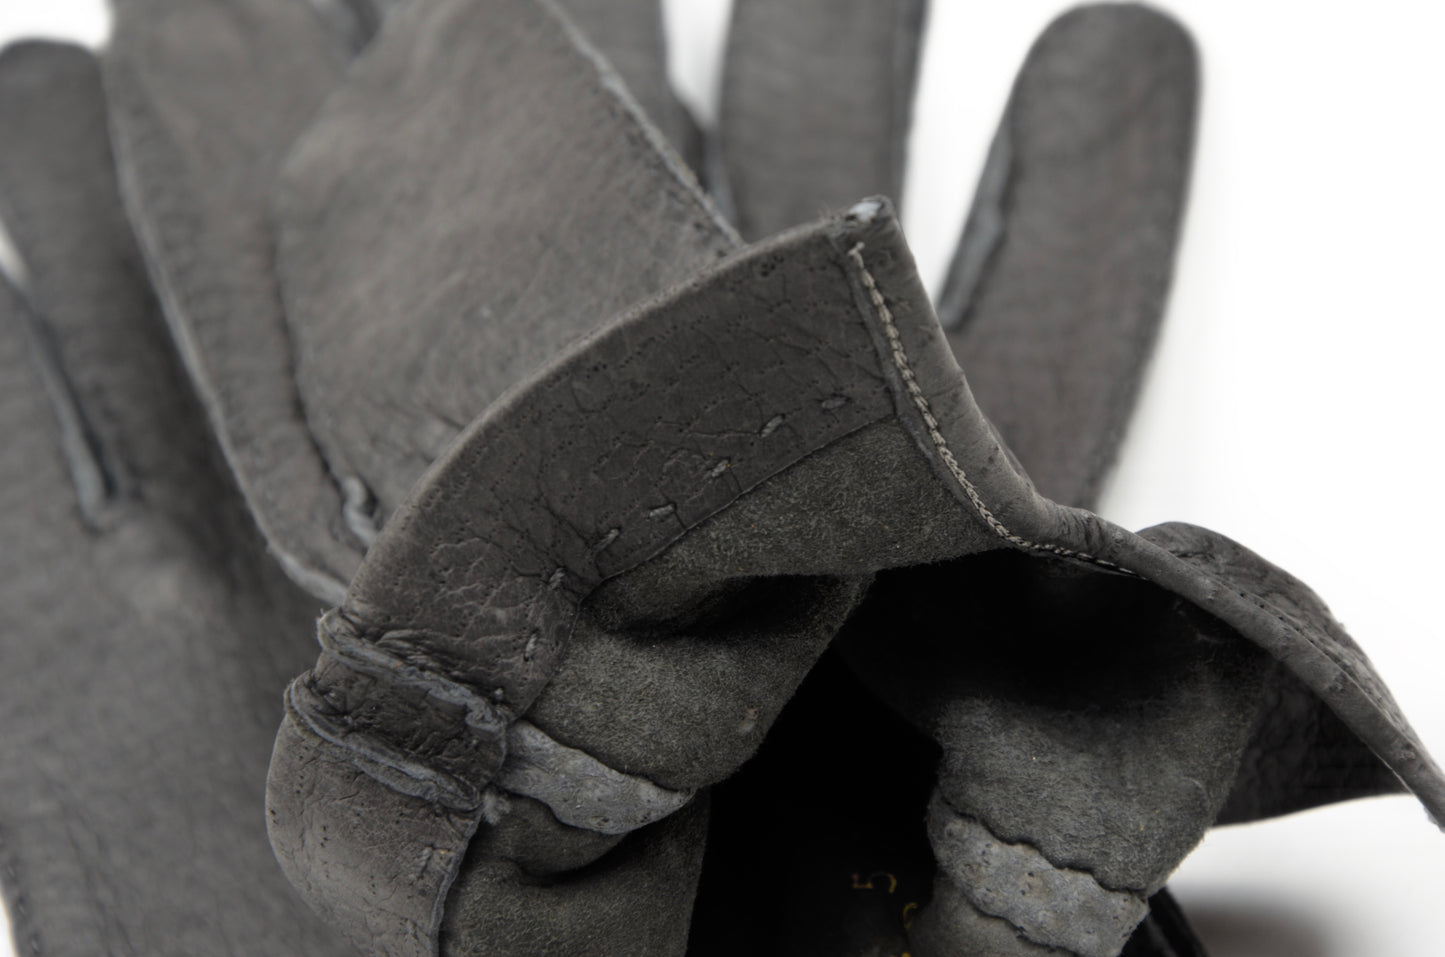 Ungefütterte Peccary-Handschuhe Größe 8 3/4 - Grau